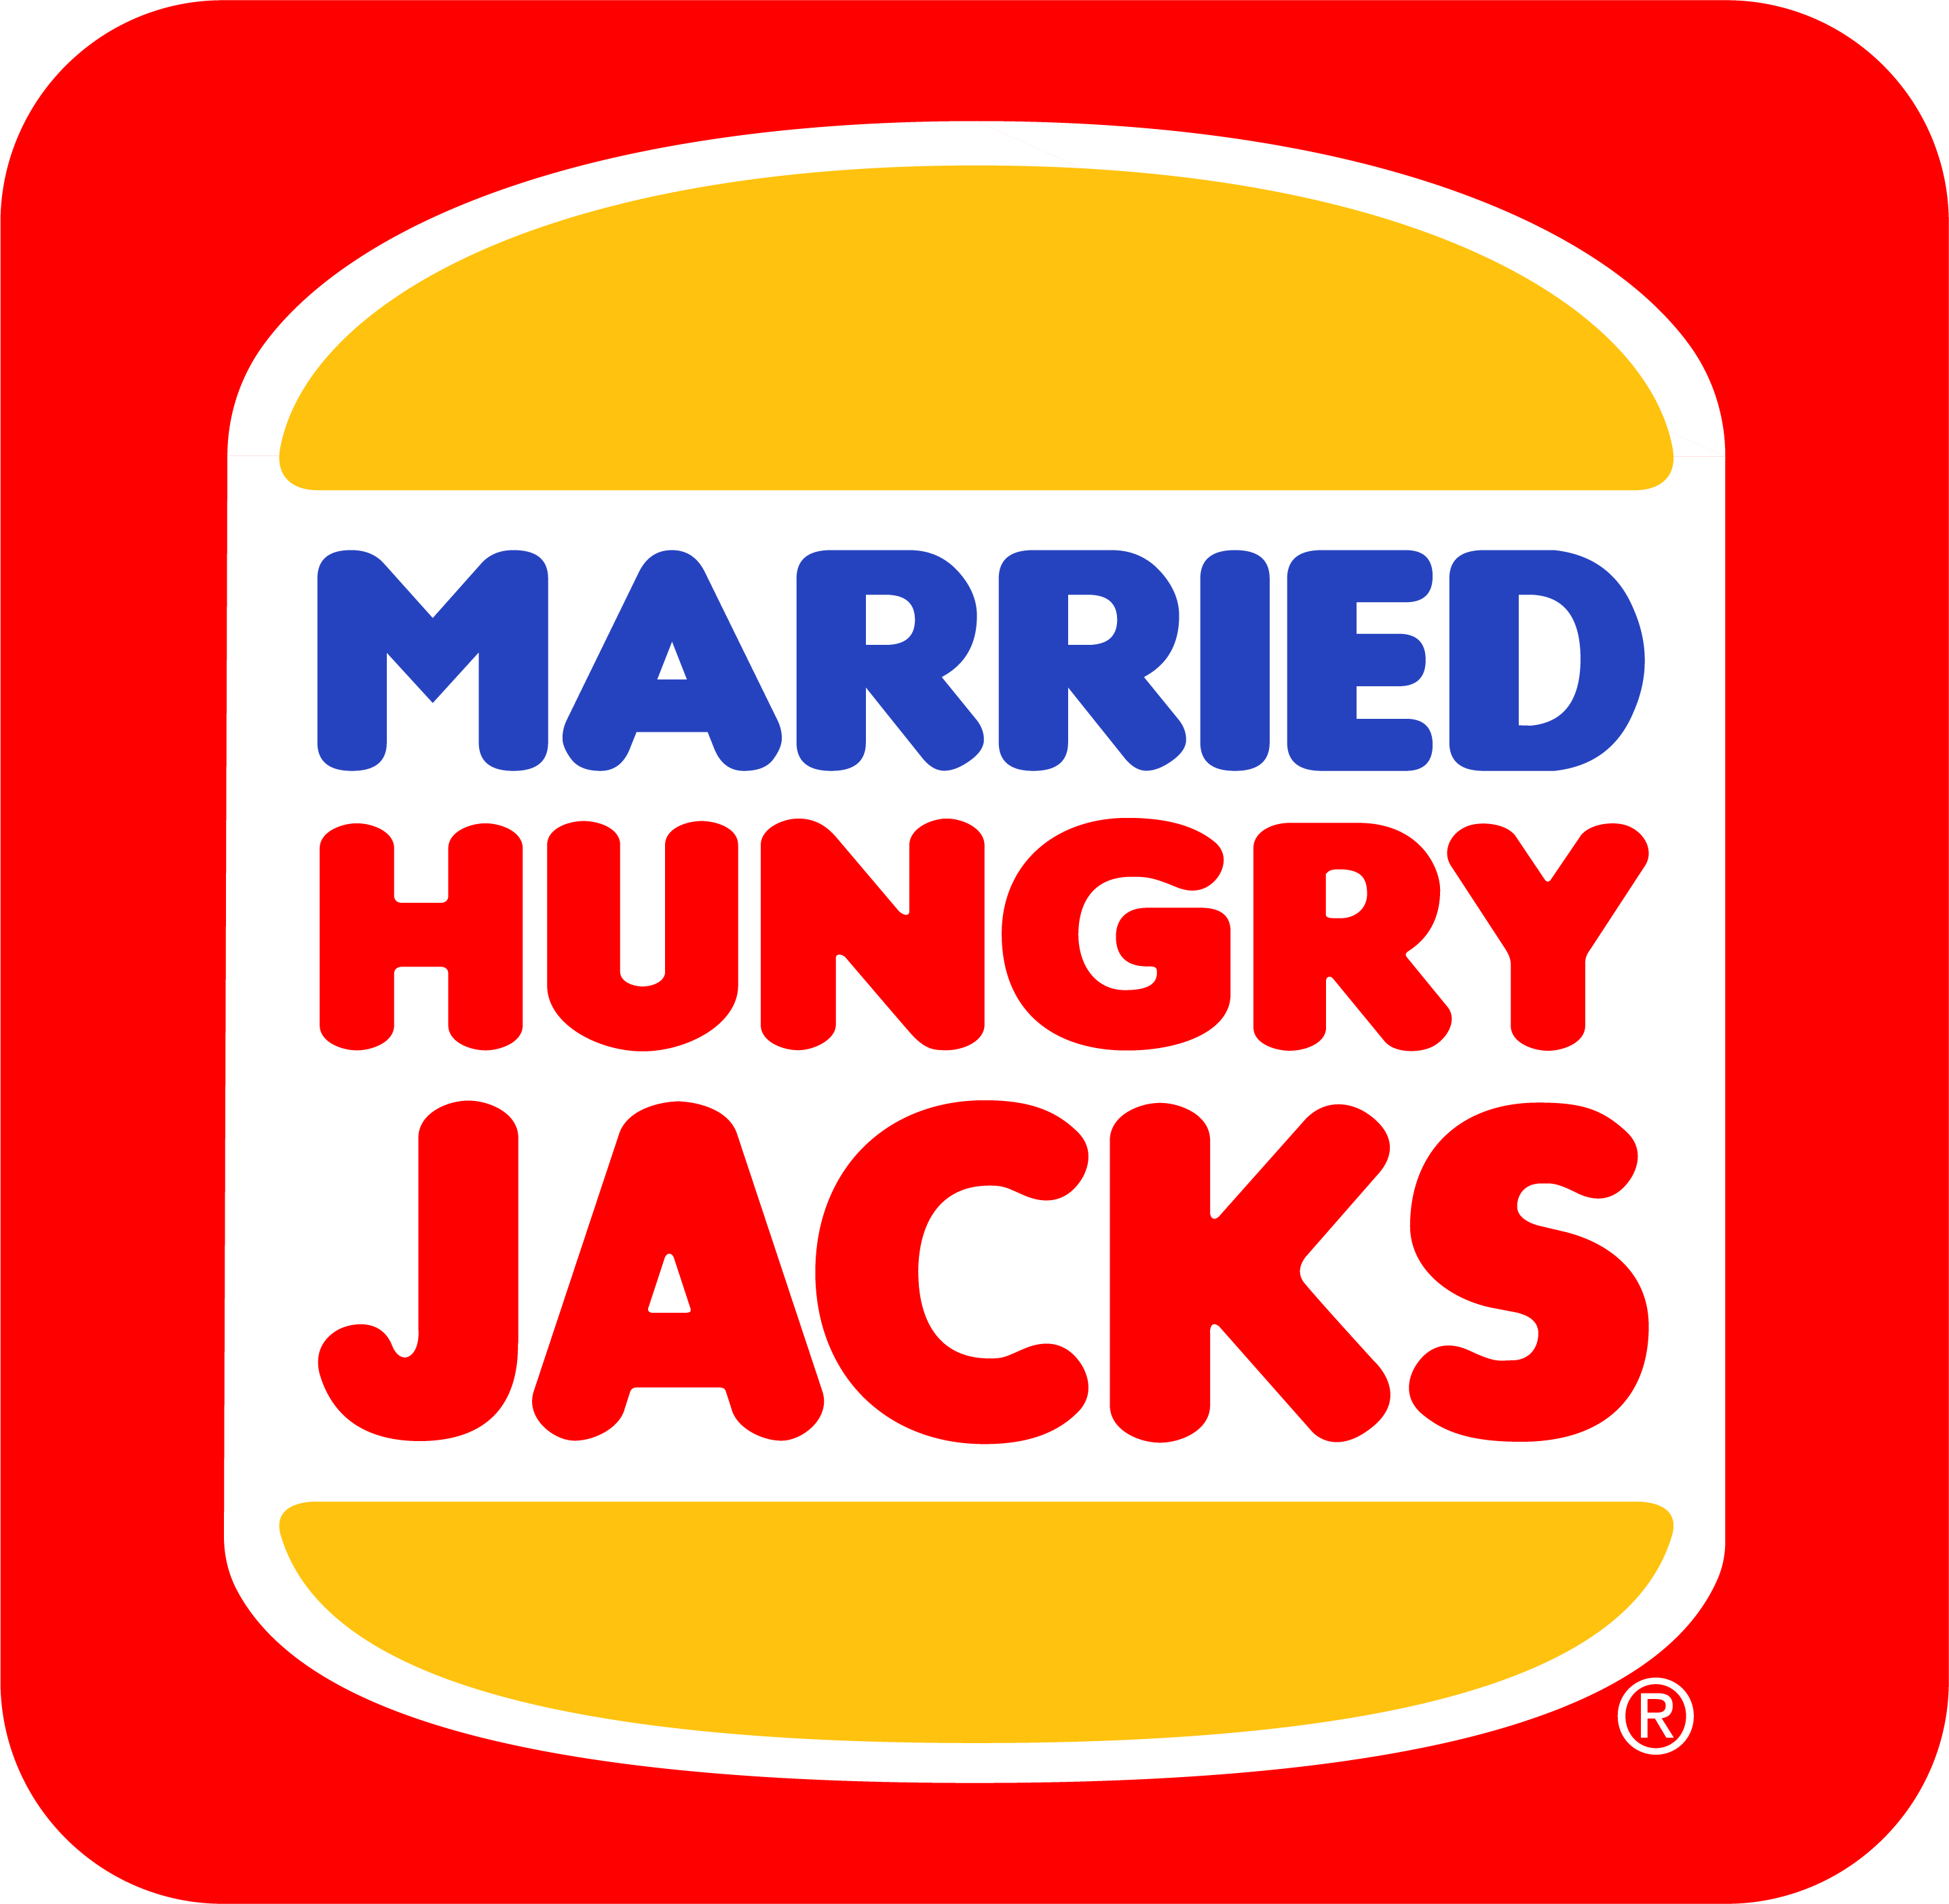 Jack's Logo - Married Hungry Jacks logo - Album on Imgur